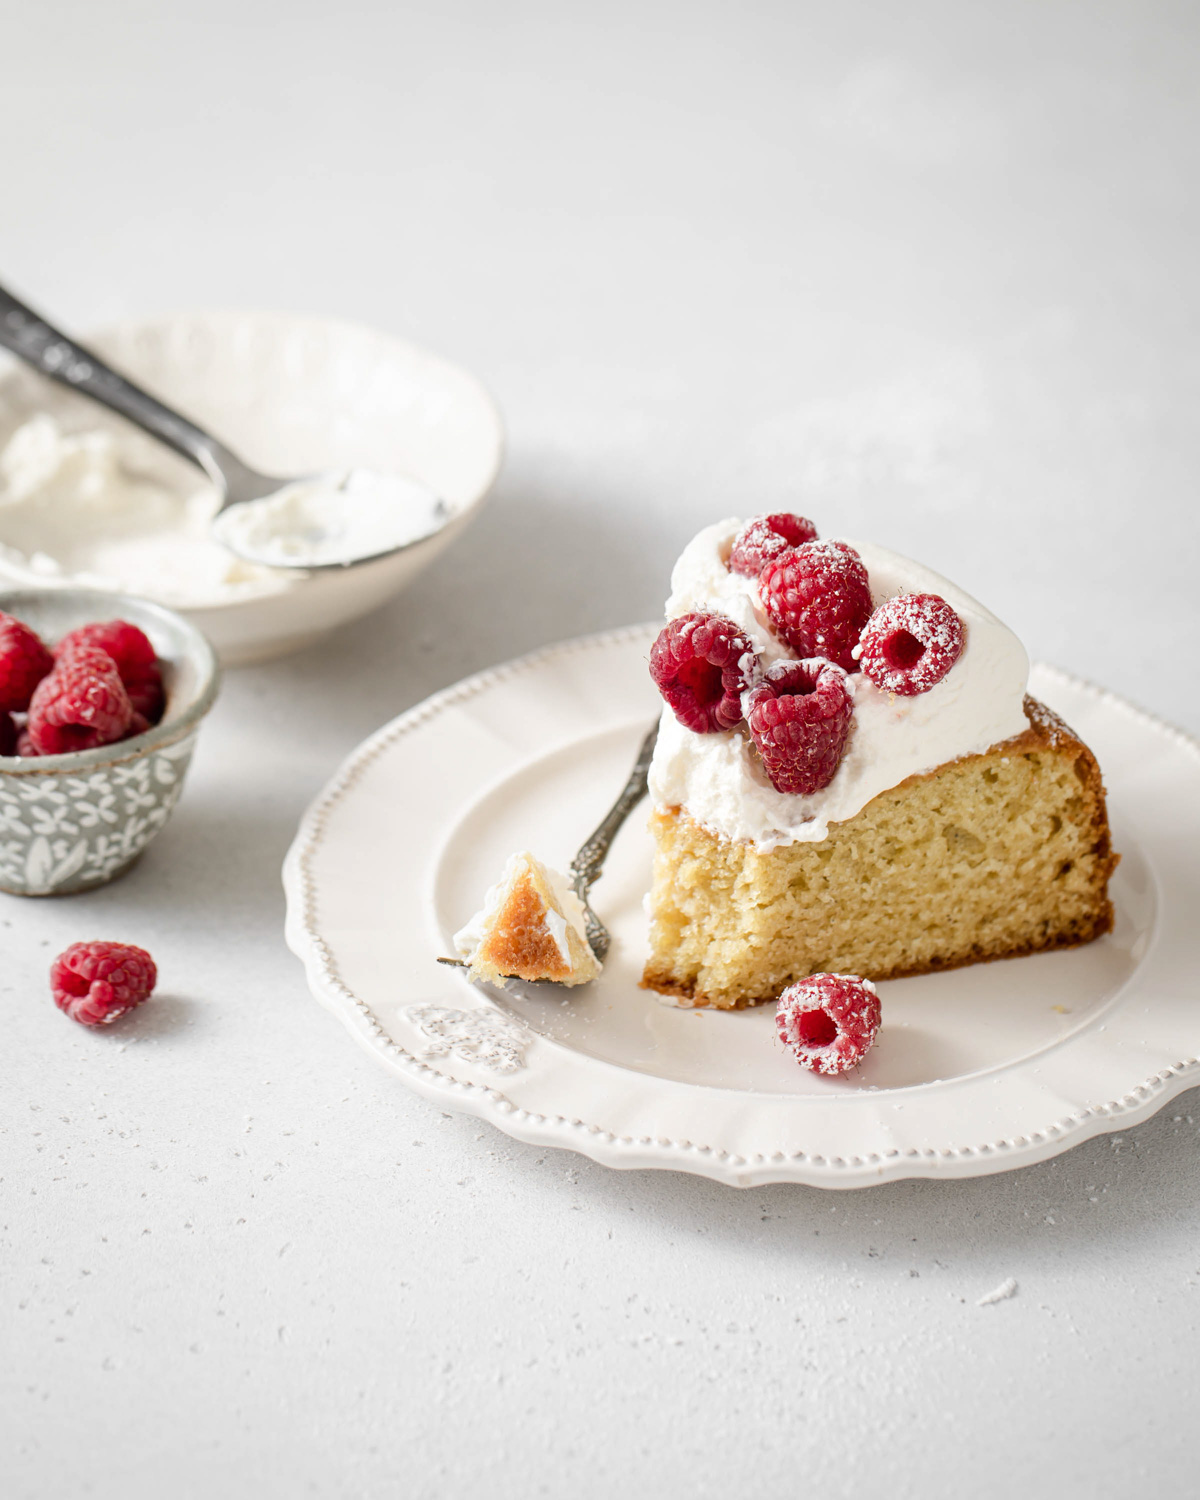 A slice of greek yogurt cake with whipped cream and raspberries